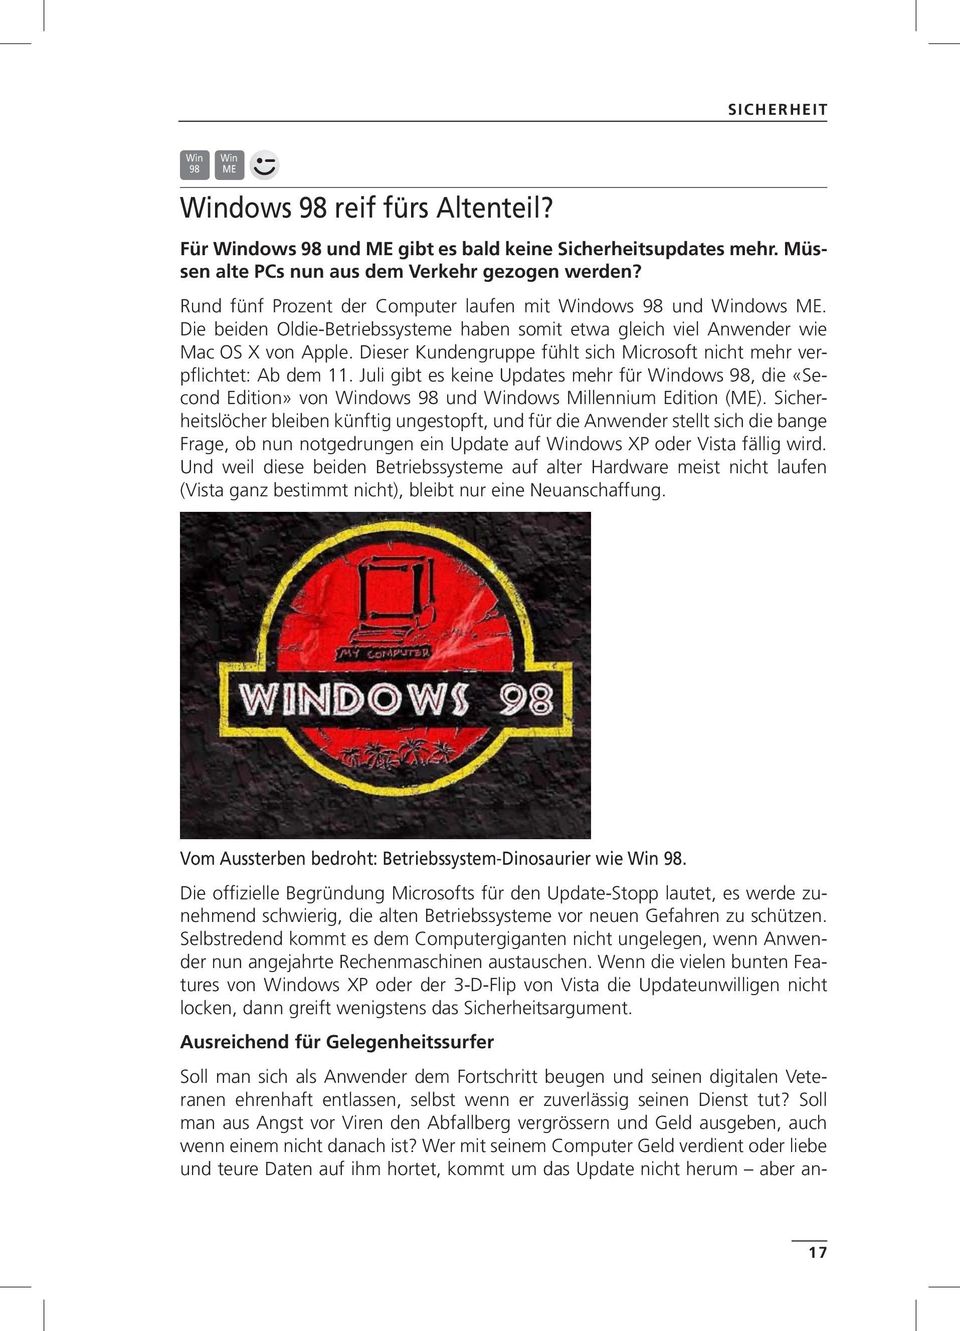 Dieser Kundengruppe fühlt sich Microsoft nicht mehr verpflichtet: Ab dem 11. Juli gibt es keine Updates mehr für Windows 98, die «Second Edition» von Windows 98 und Windows Millennium Edition (ME).